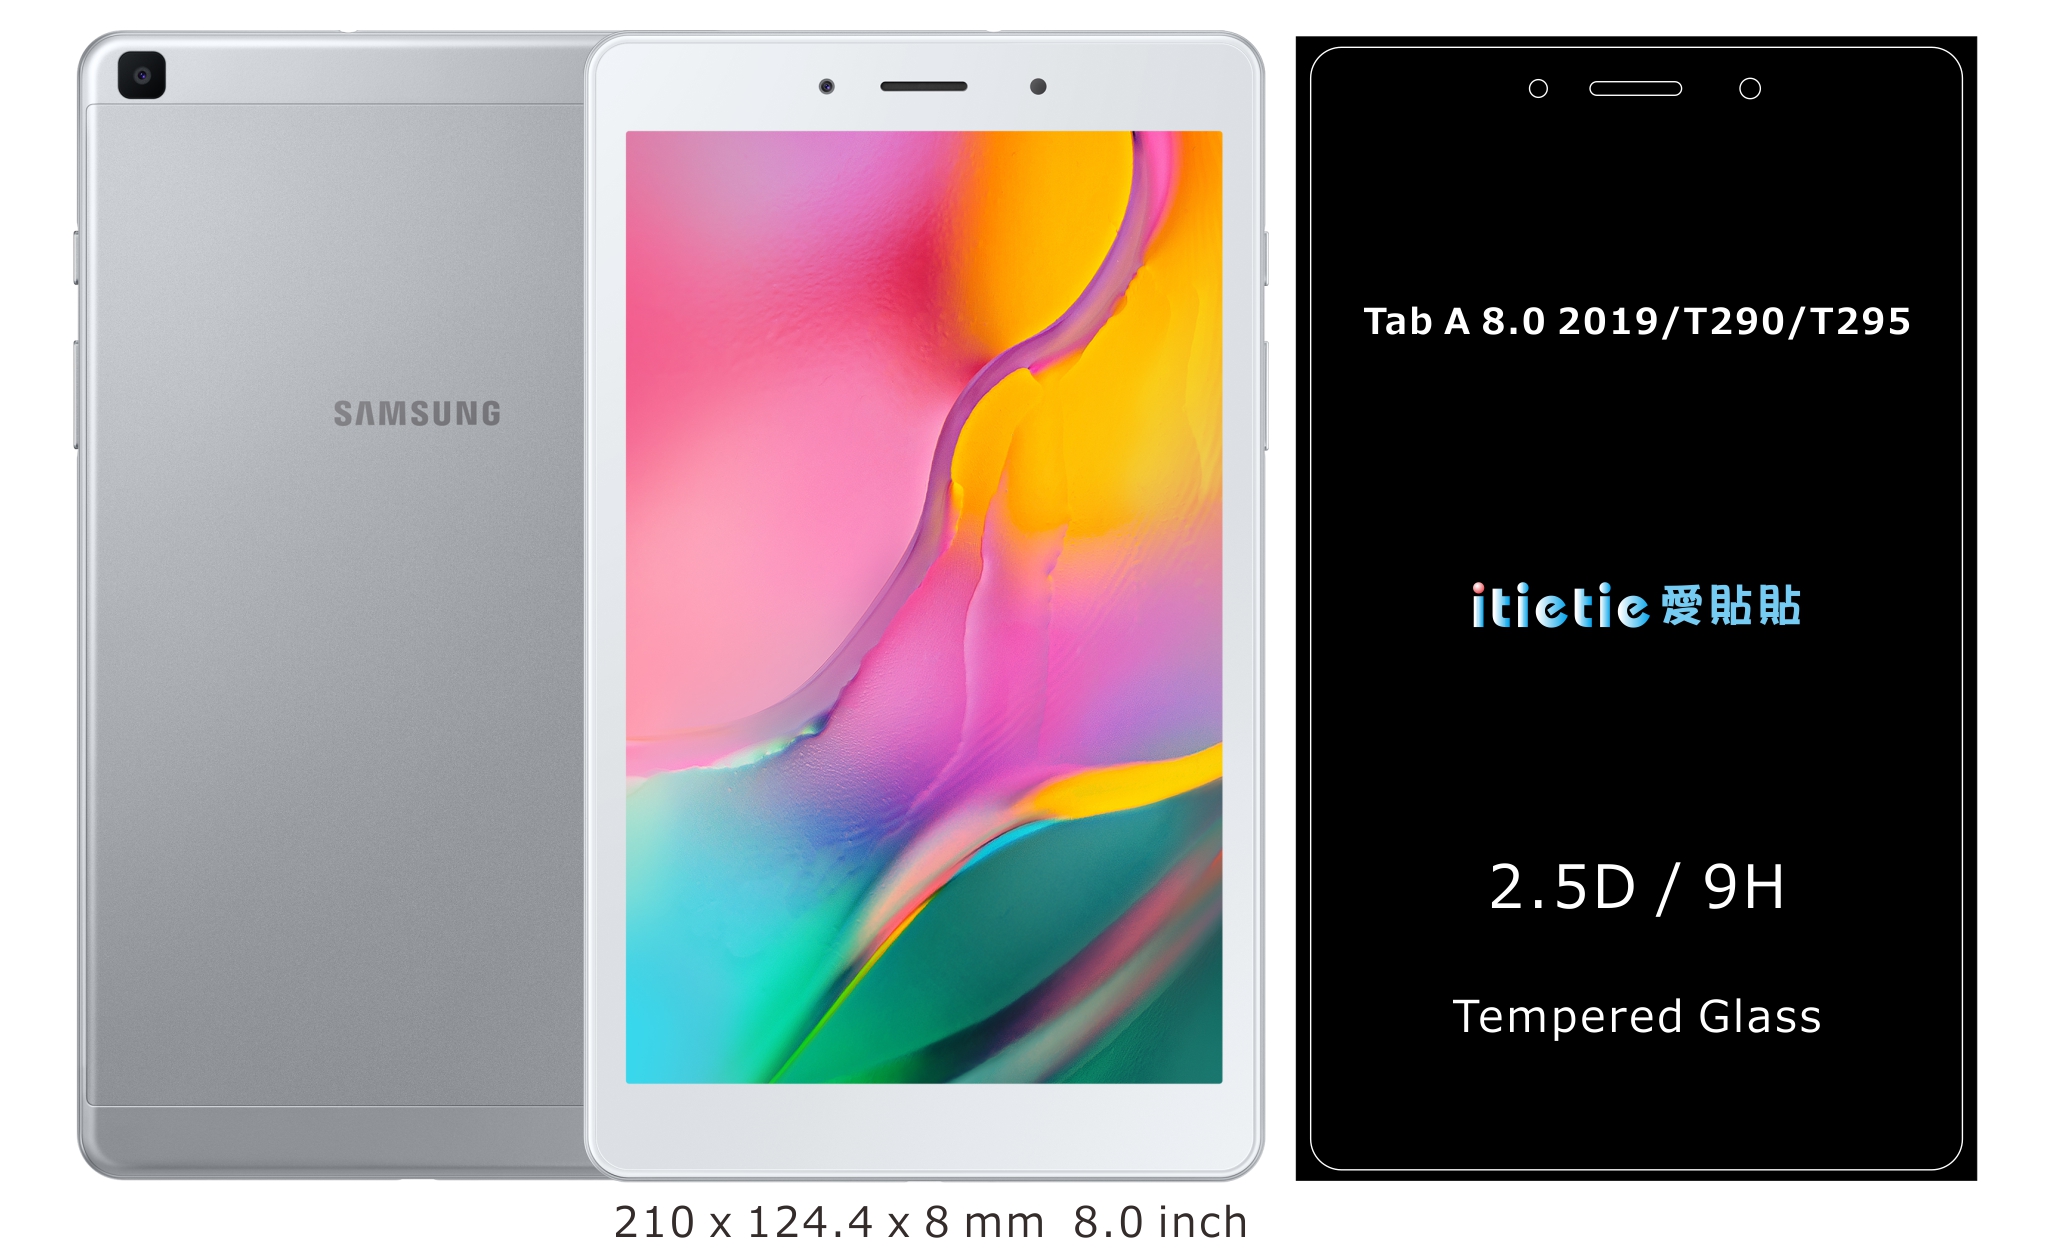 Galaxy Tab A 8.0 2019/T295/T290